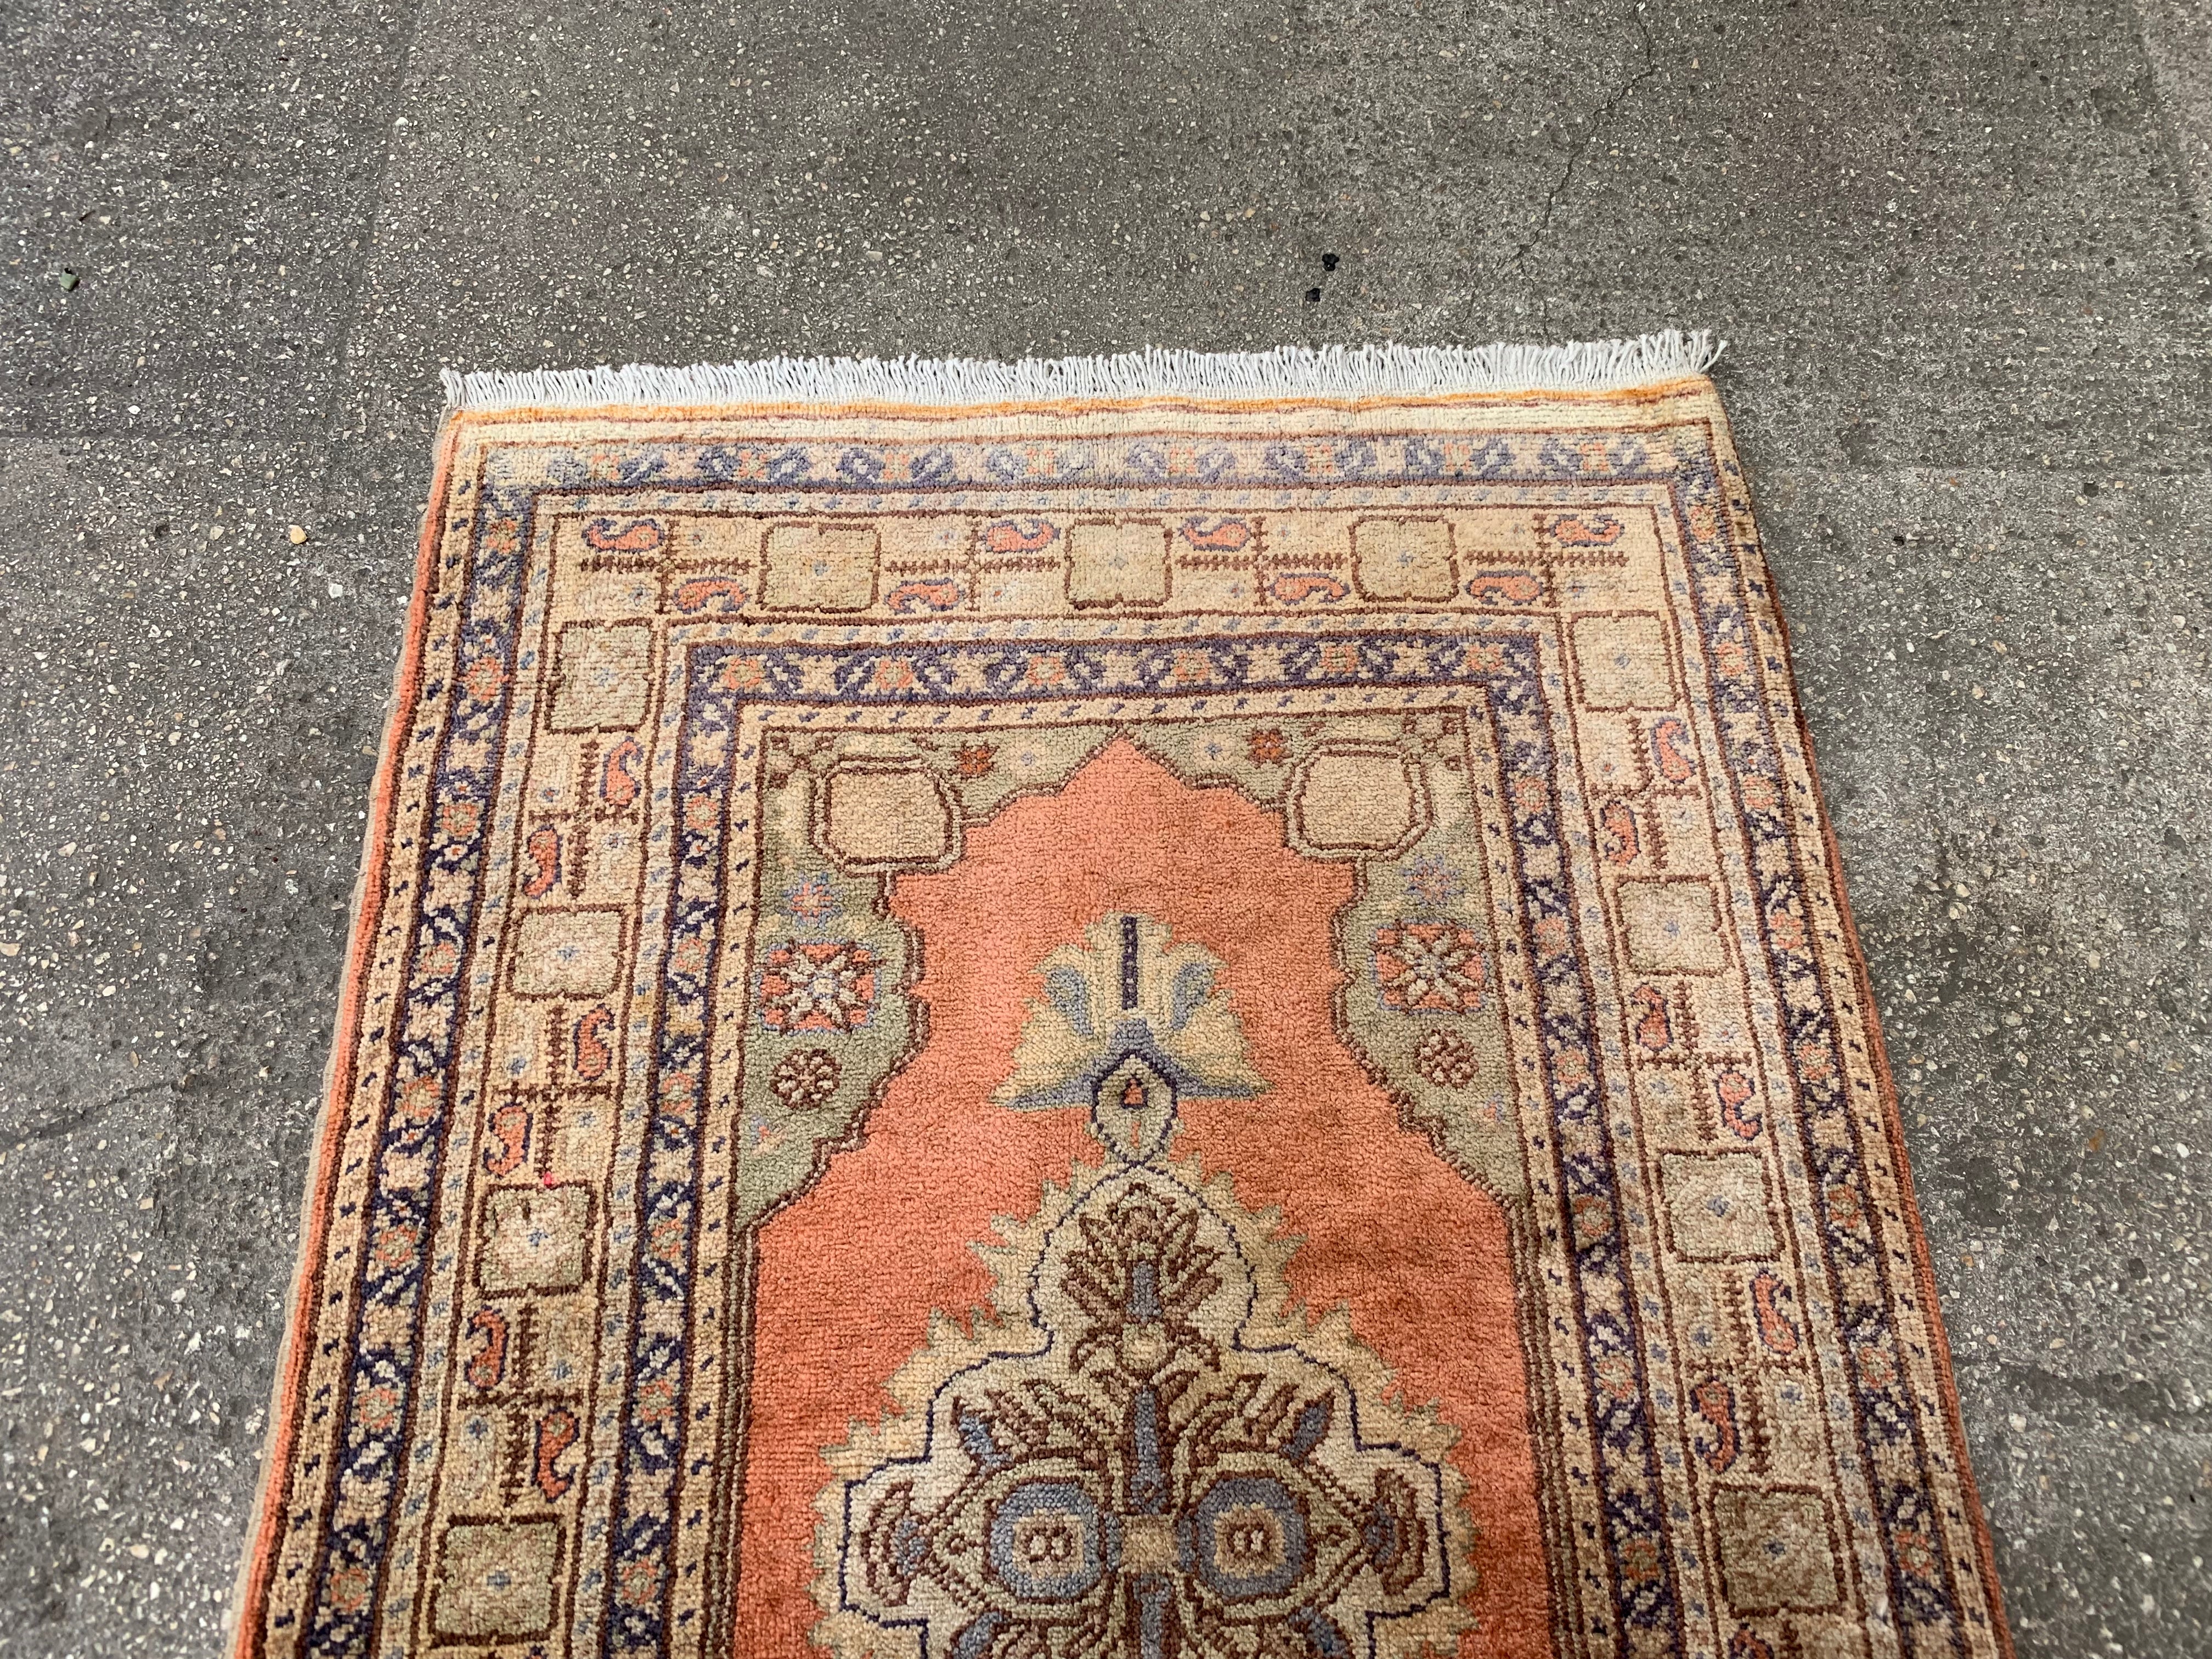 Small Turkish carpet, 2.1x3.5 ft, f425